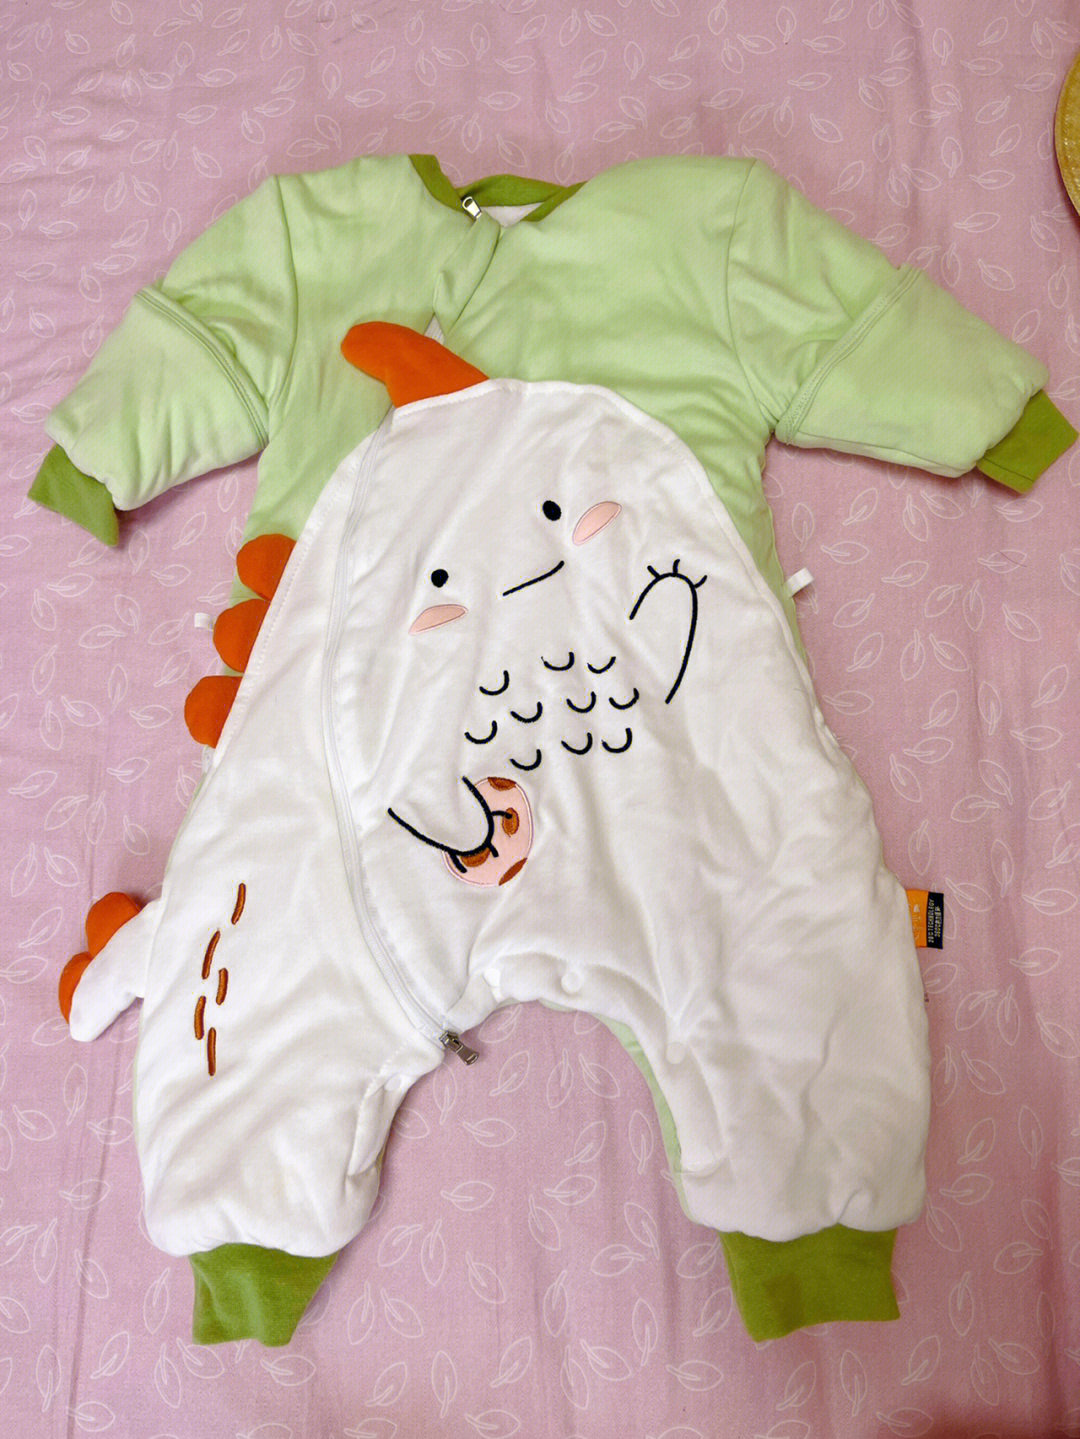 宝宝的衣服1